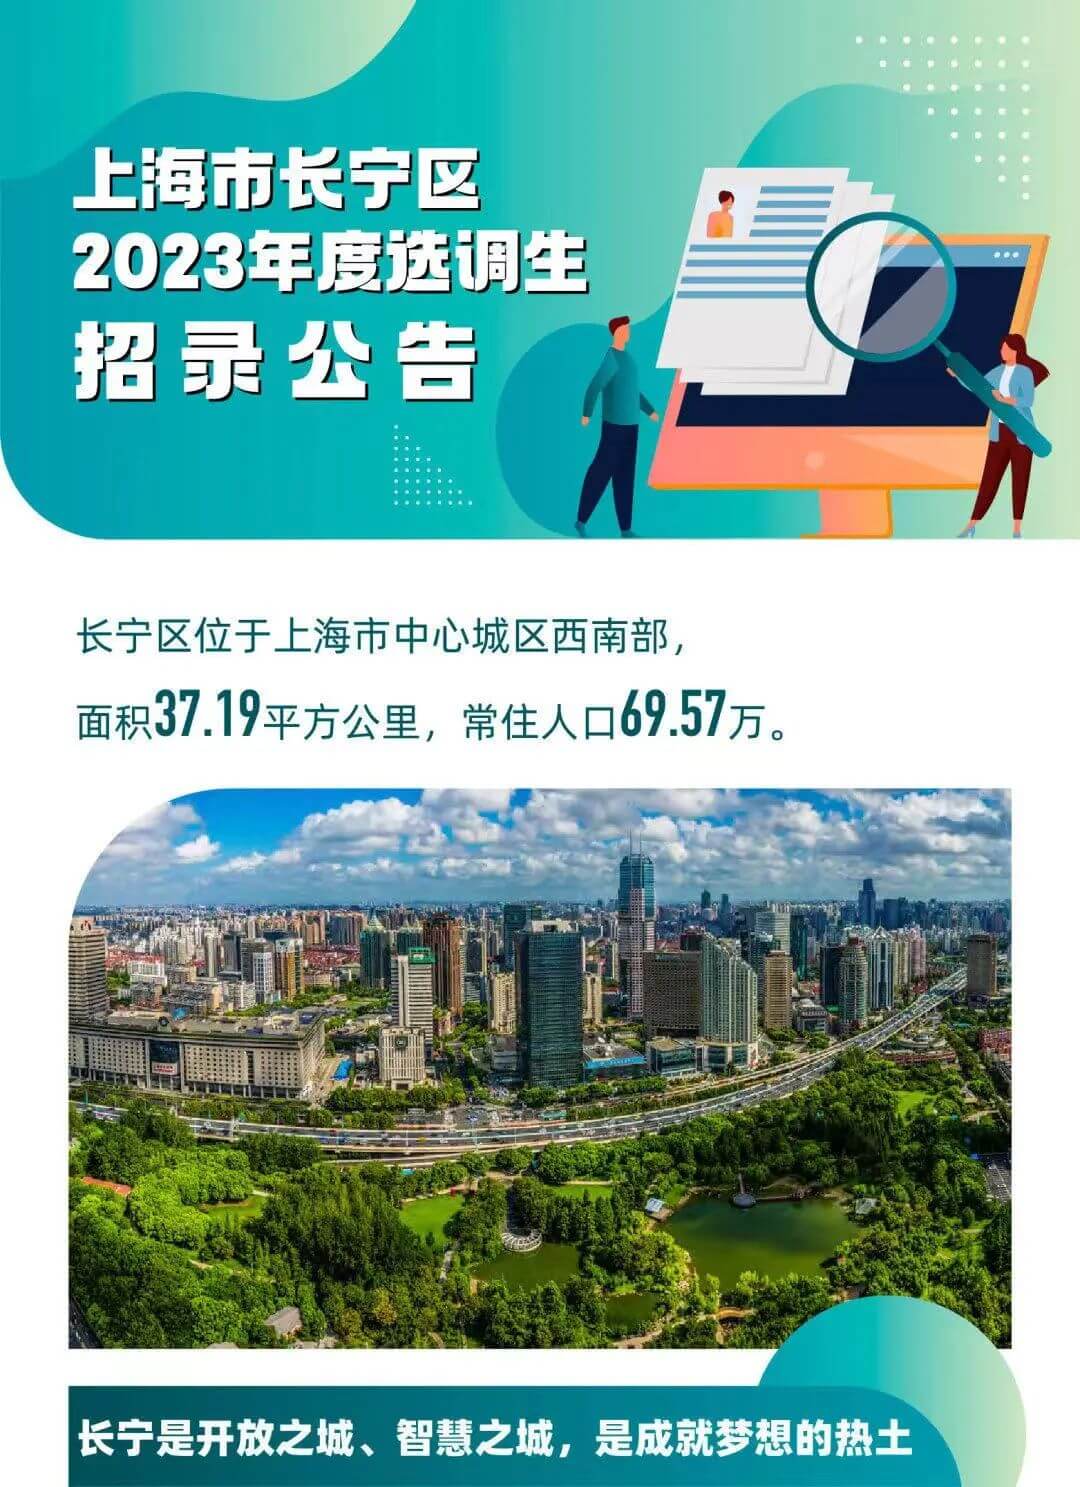 上海市长宁区2023年度选调生招录工作启动！（报名截止2022年10月14日18时）